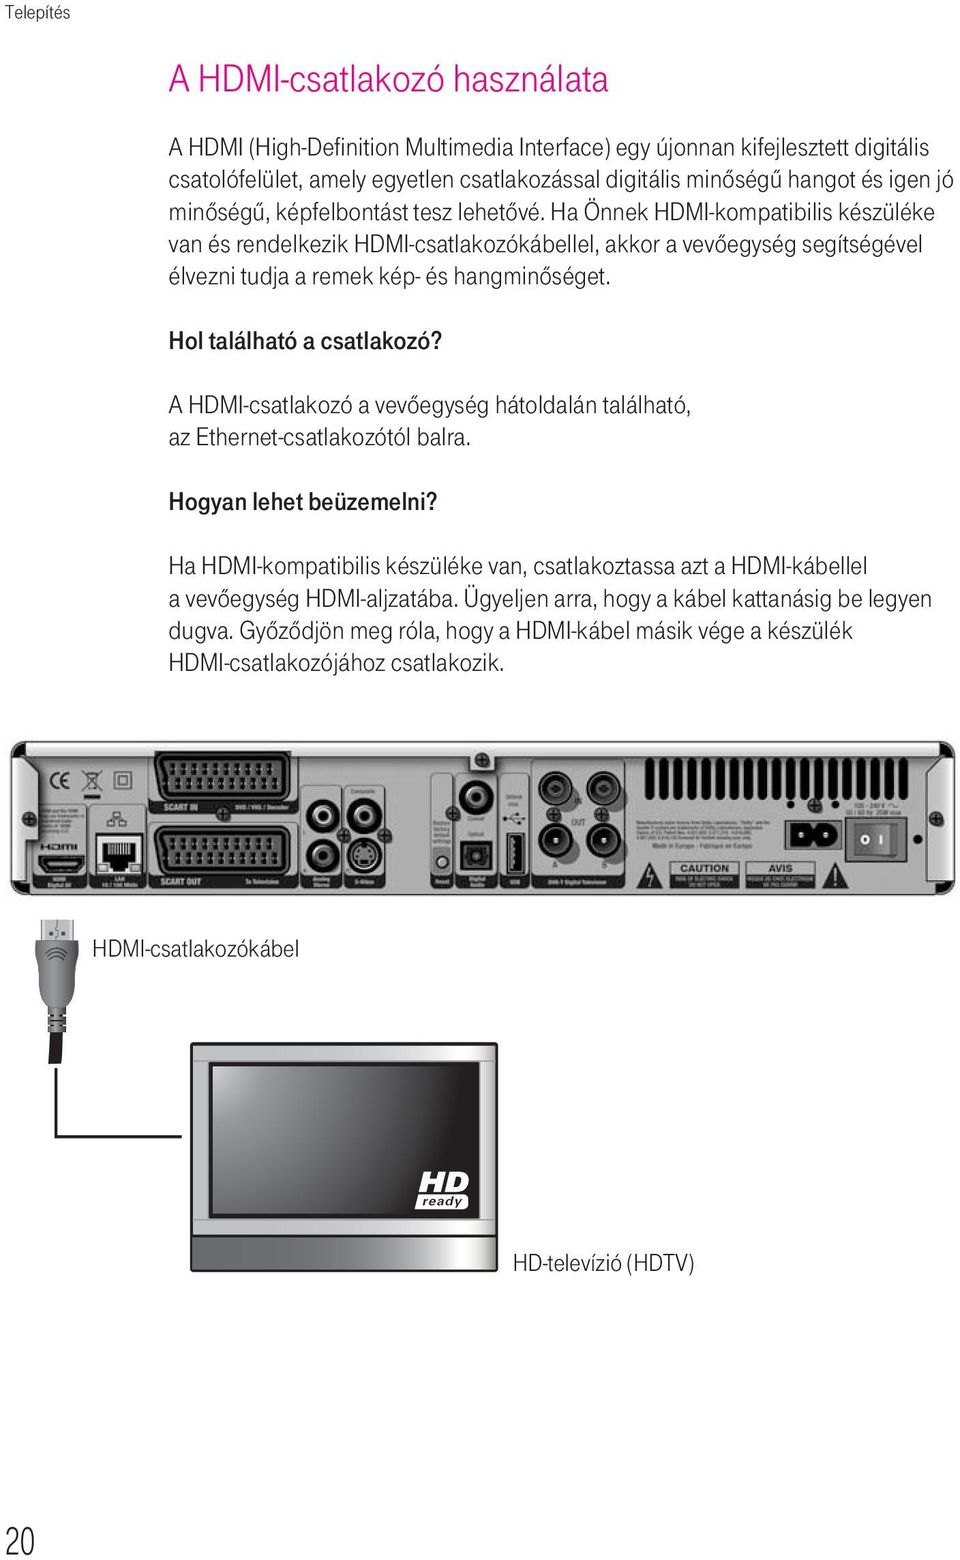 Ha Önnek HDMI-kompatibilis készüléke van és rendelkezik HDMI-csatlakozókábellel, akkor a vevôegység segítségével élvezni tudja a remek kép- és hangminôséget. Hol található a csatlakozó?